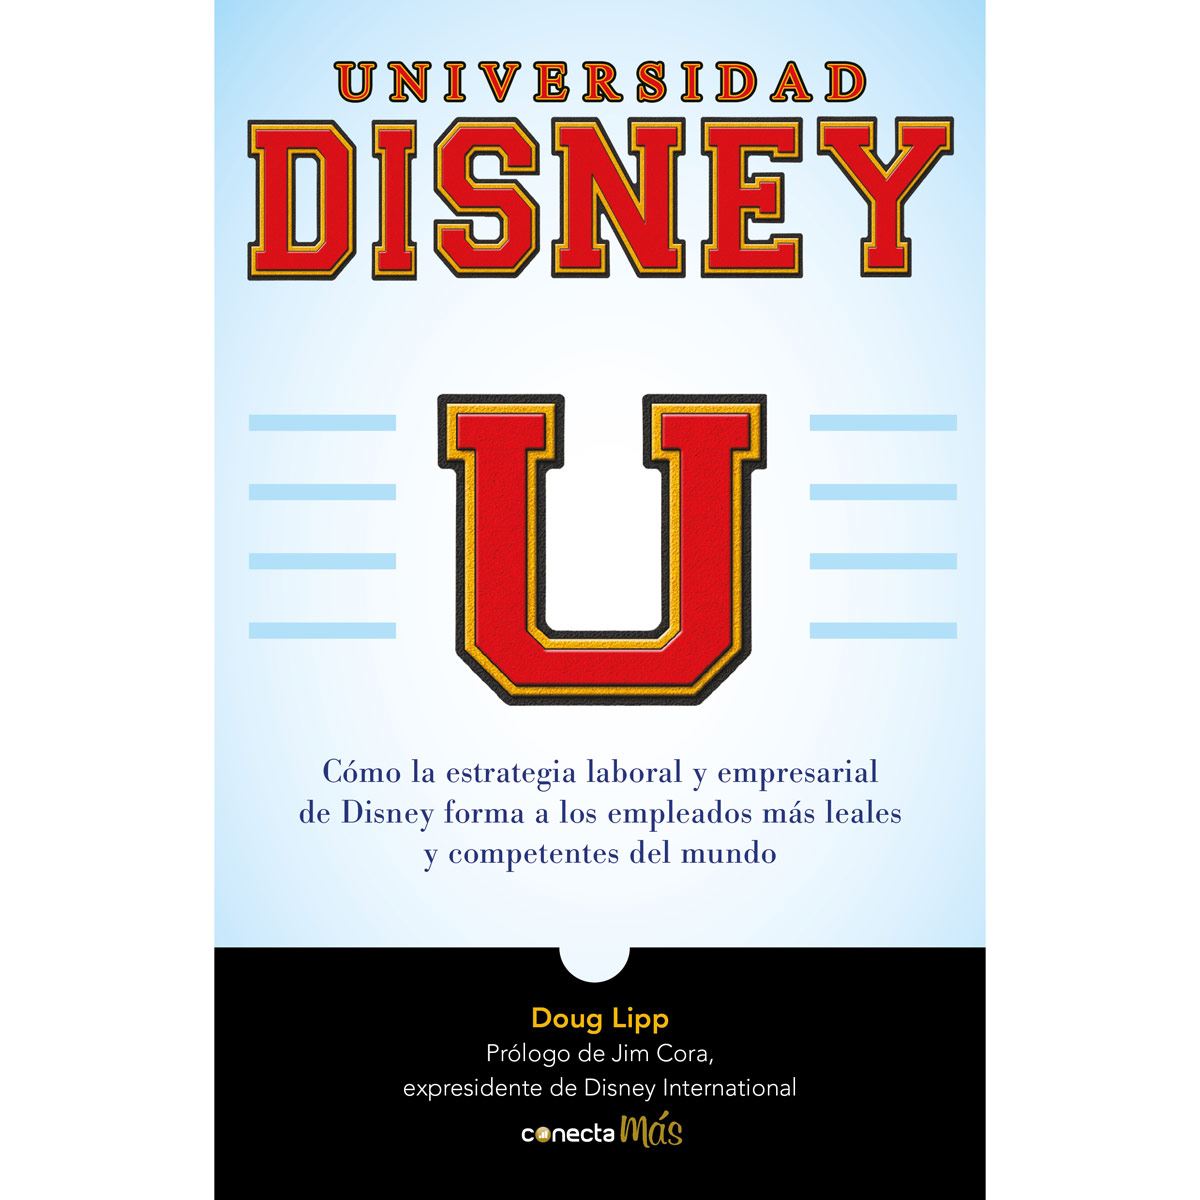 Universidad Disney